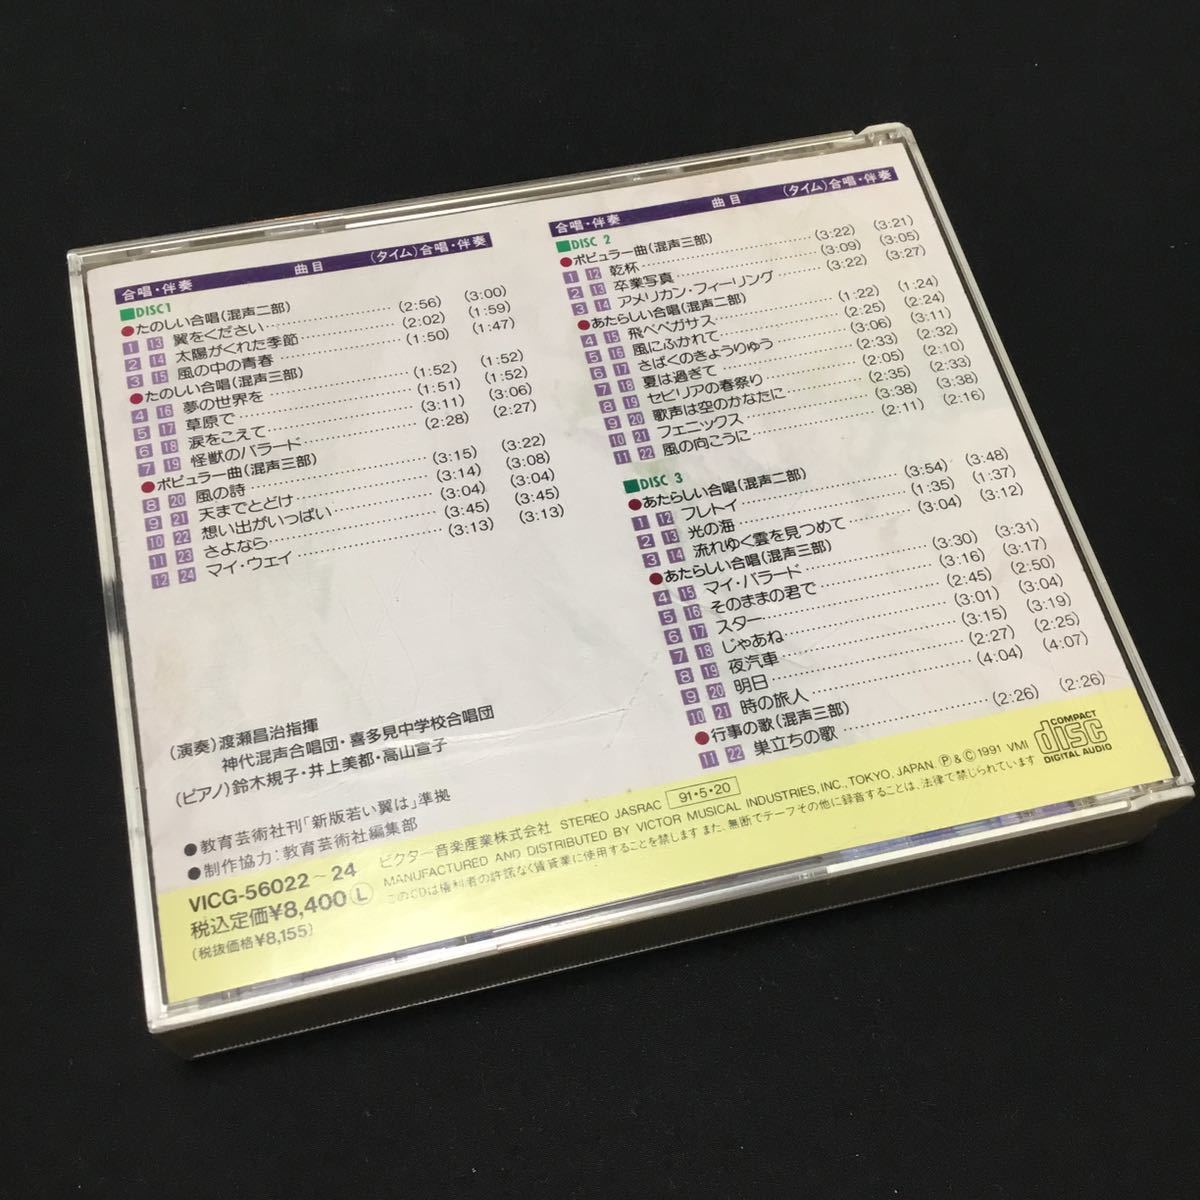 CD 新版 若い翼は 上(コーラスと伴奏) VICG-56022 3CD_画像5